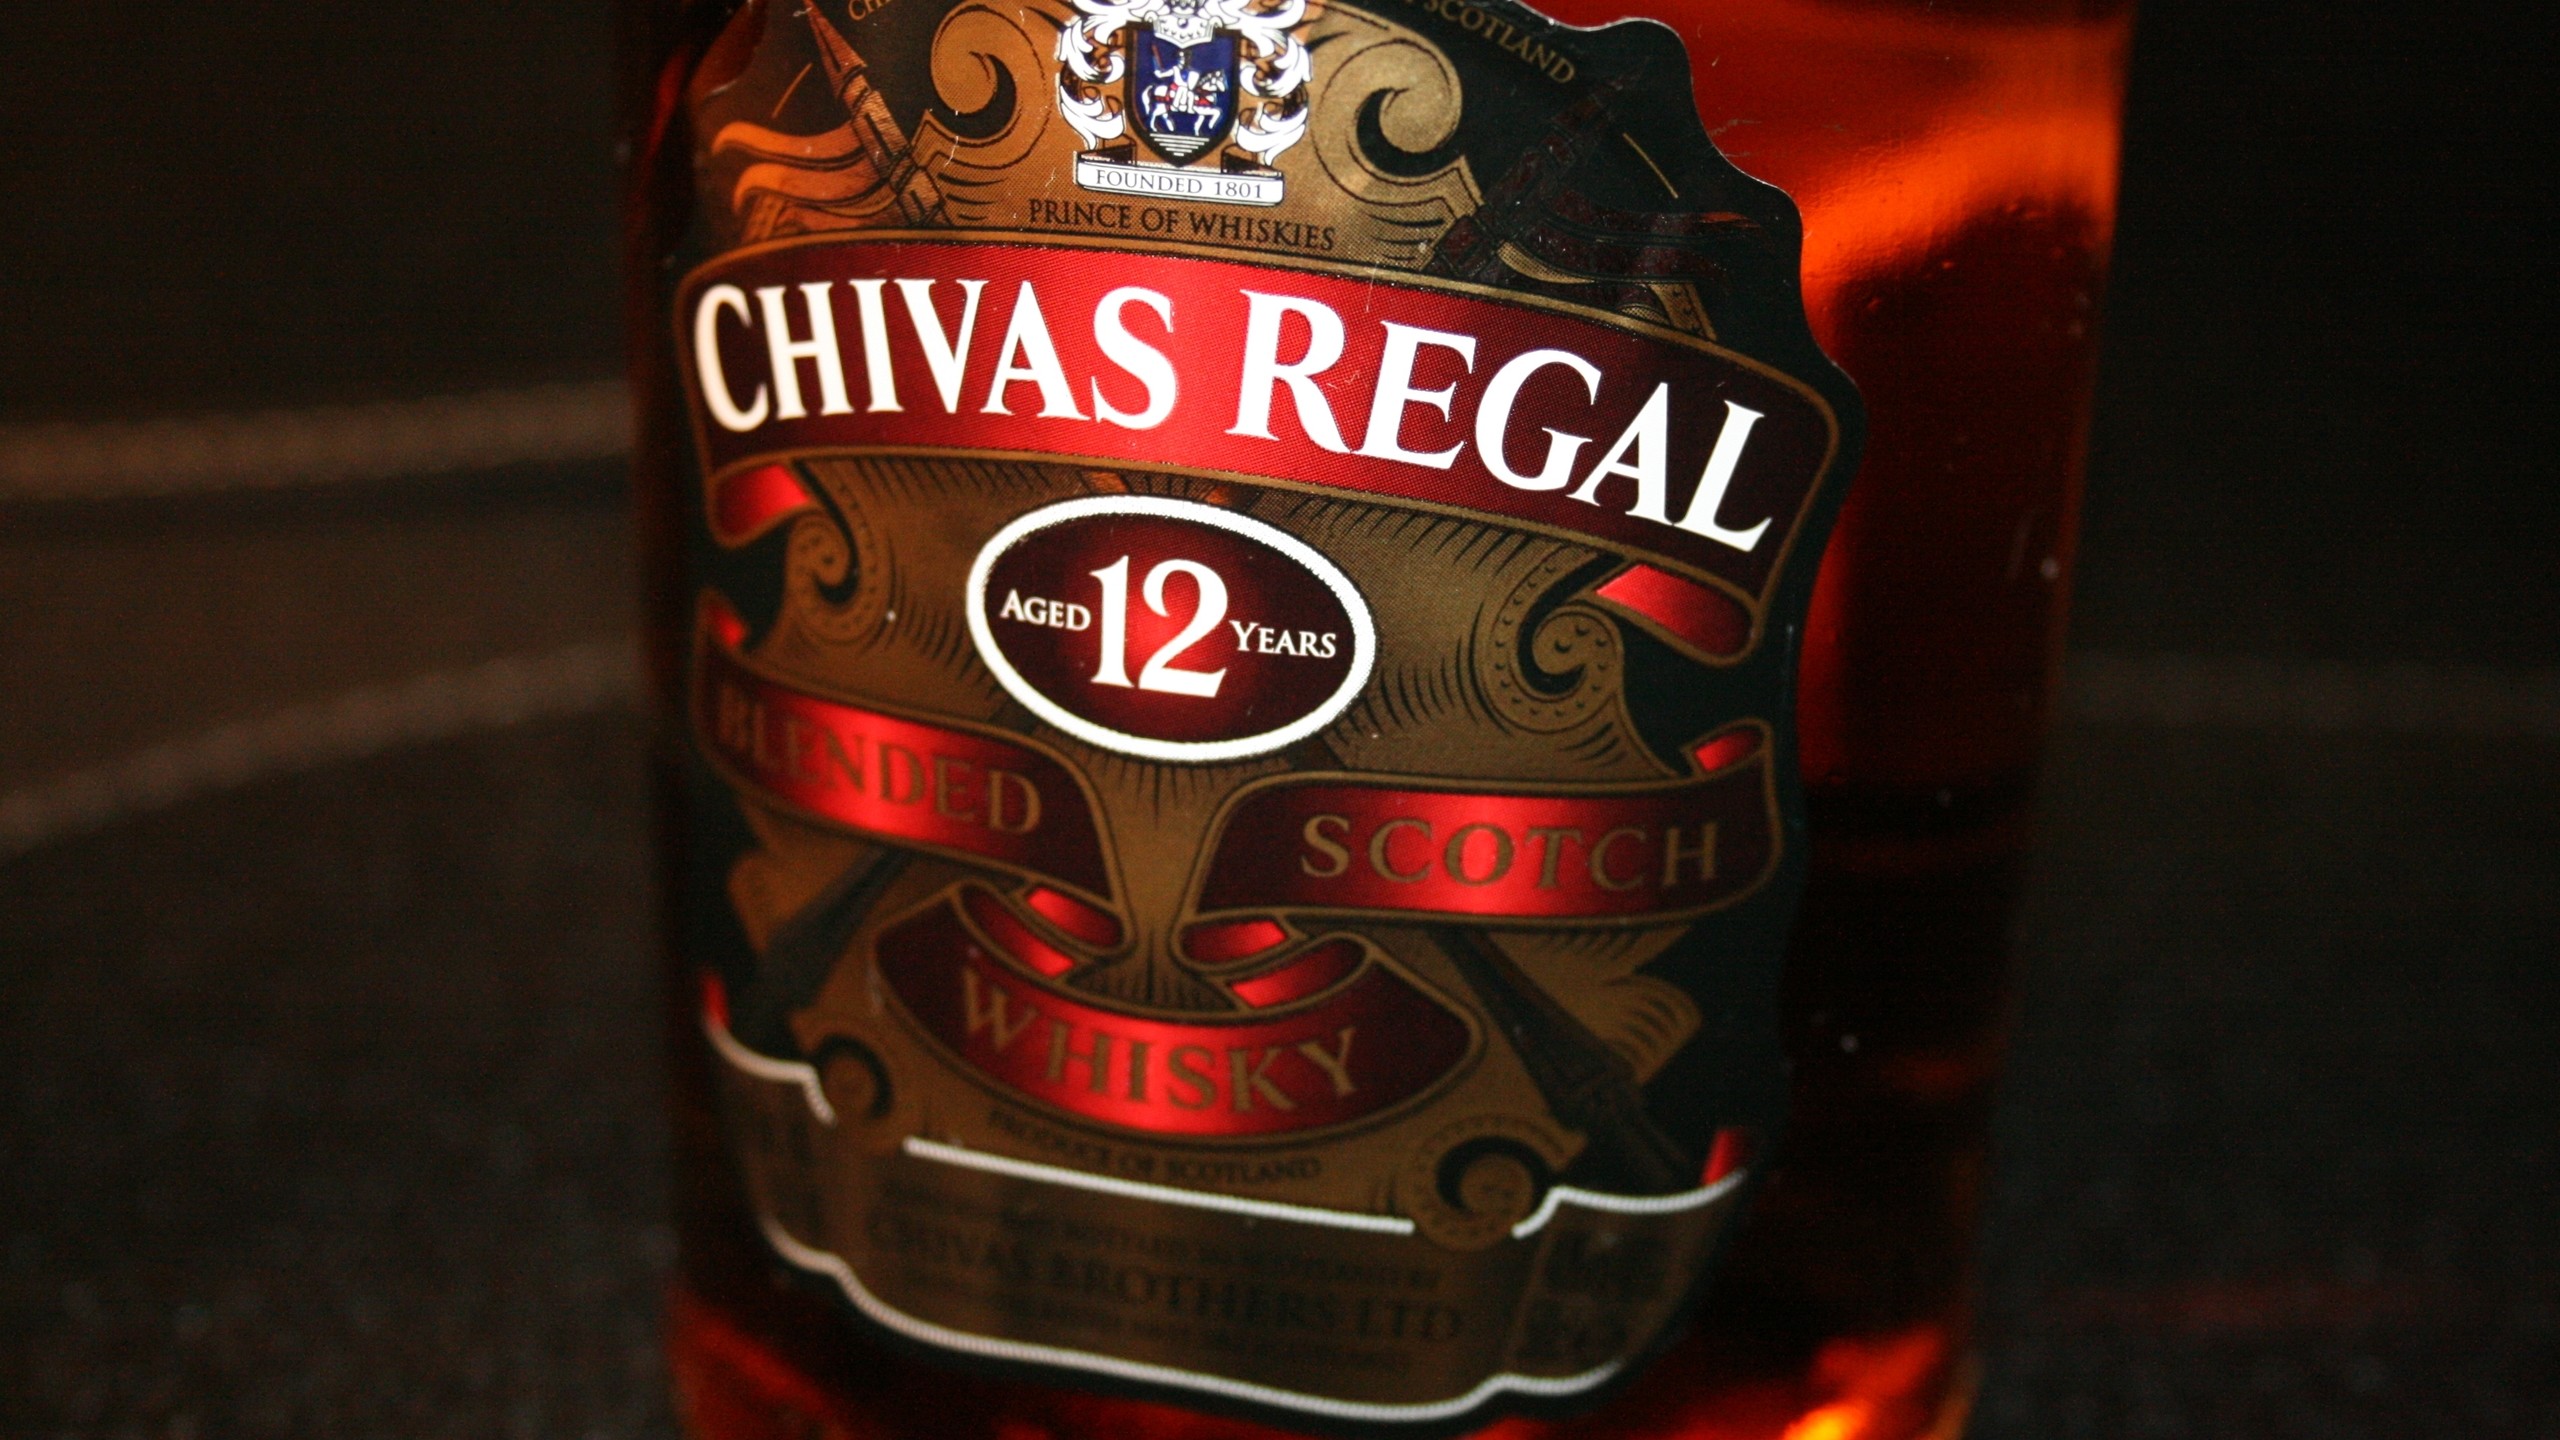 2560x1440 Wallpaper Of A Bottle Of Chivas Regal [12 Years]